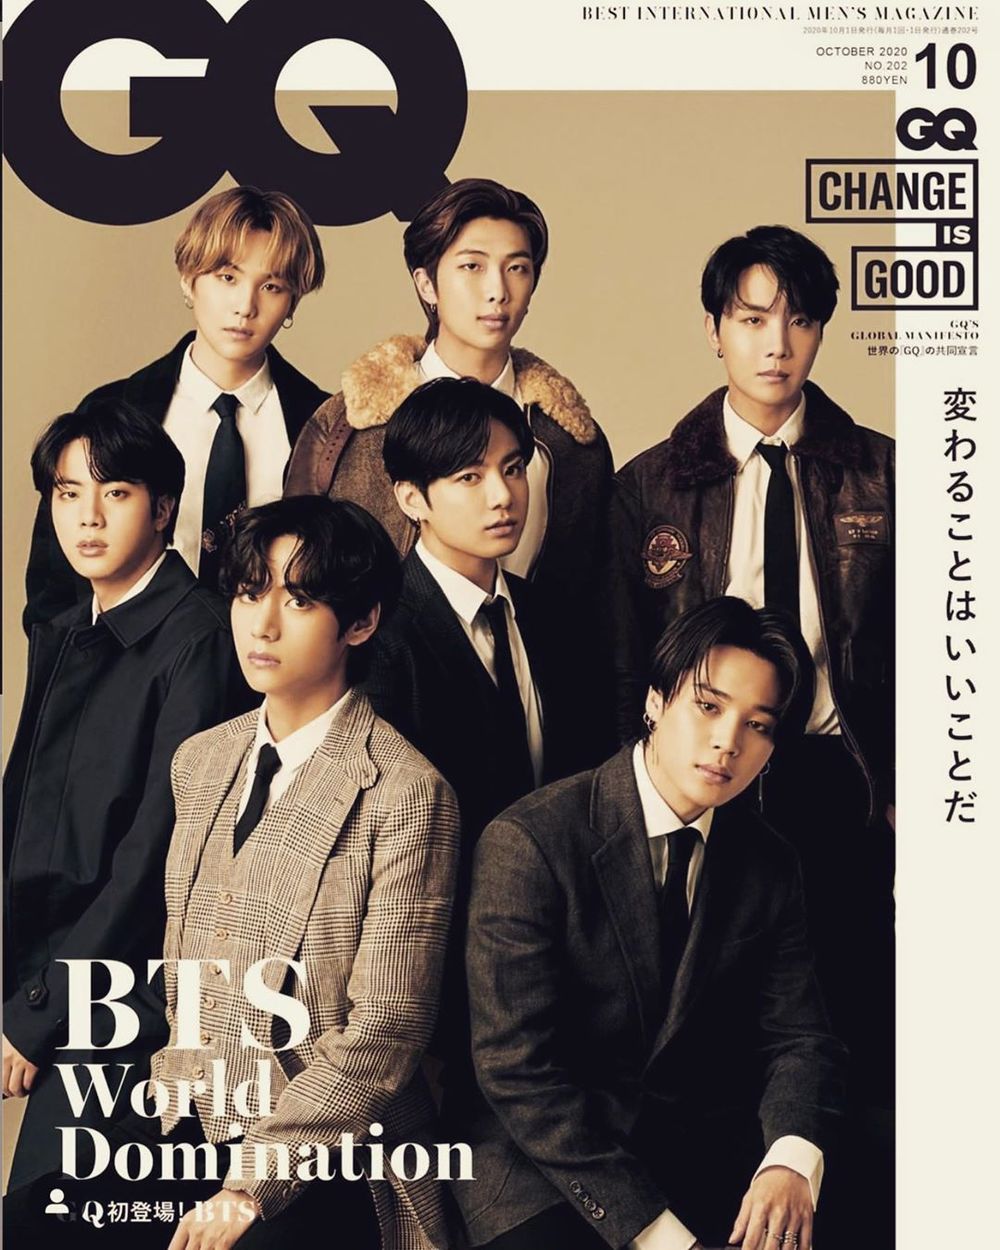 Hình của các thành viên nhóm BTS trên các bìa tạp chí